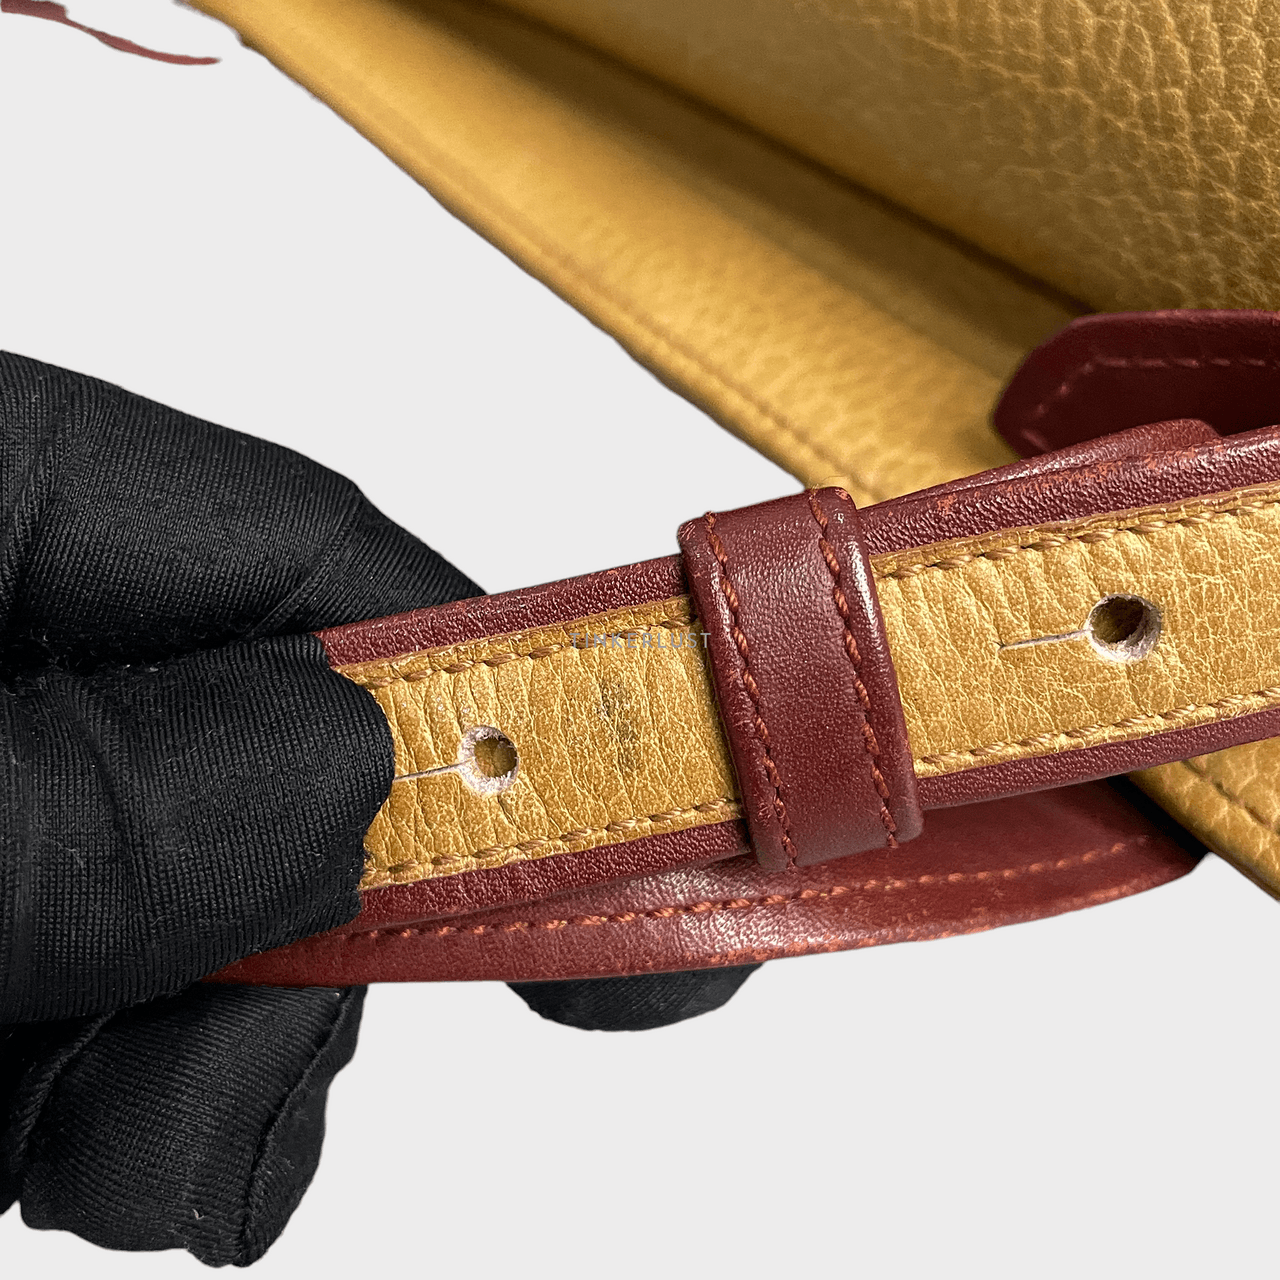 Cartier Brown/Mustard Lambskin Sling Bag